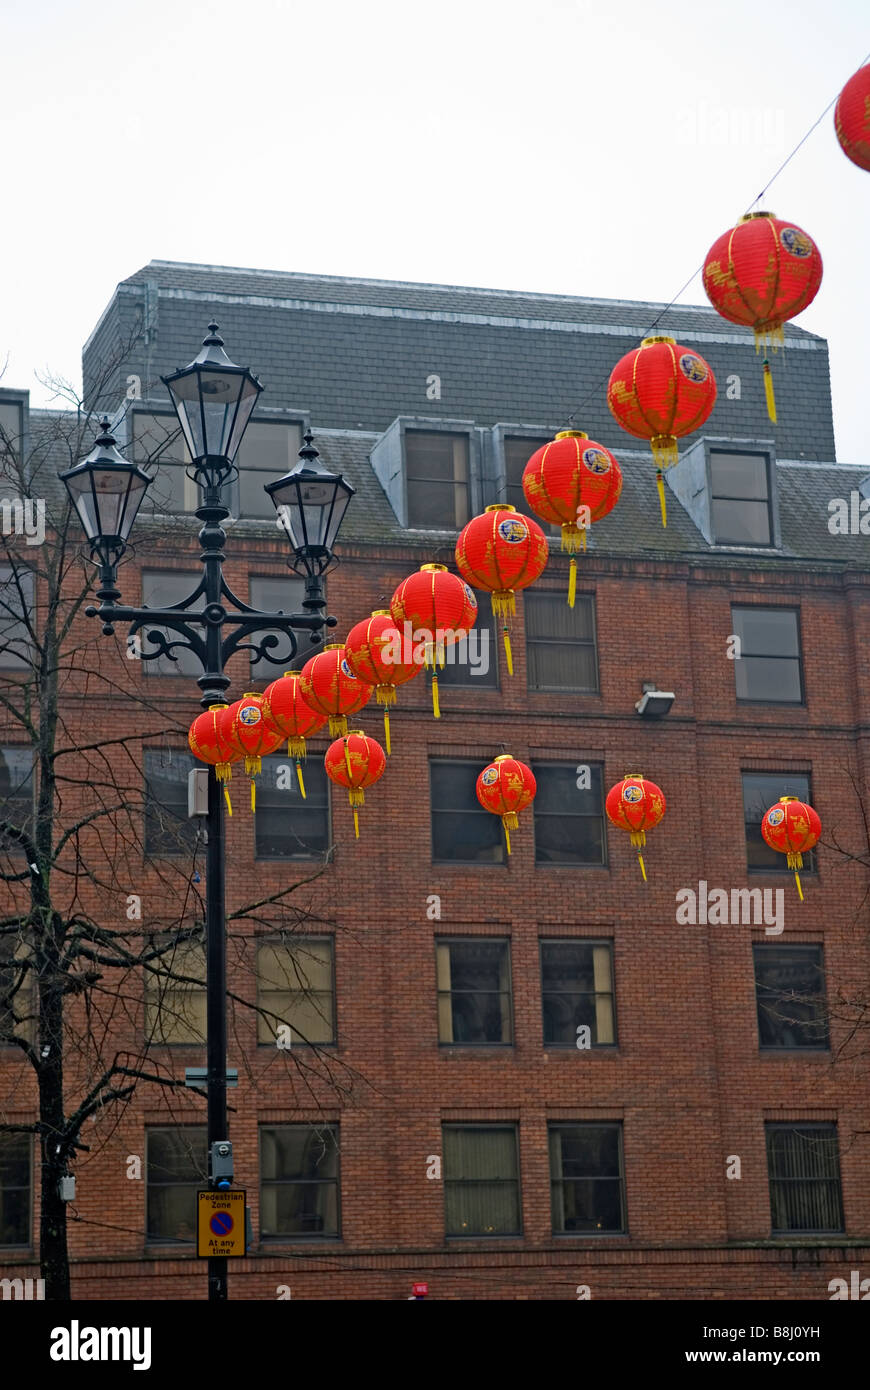 Año nuevo chino farolillos de decoración en el centro de la ciudad de Manchester UK Foto de stock